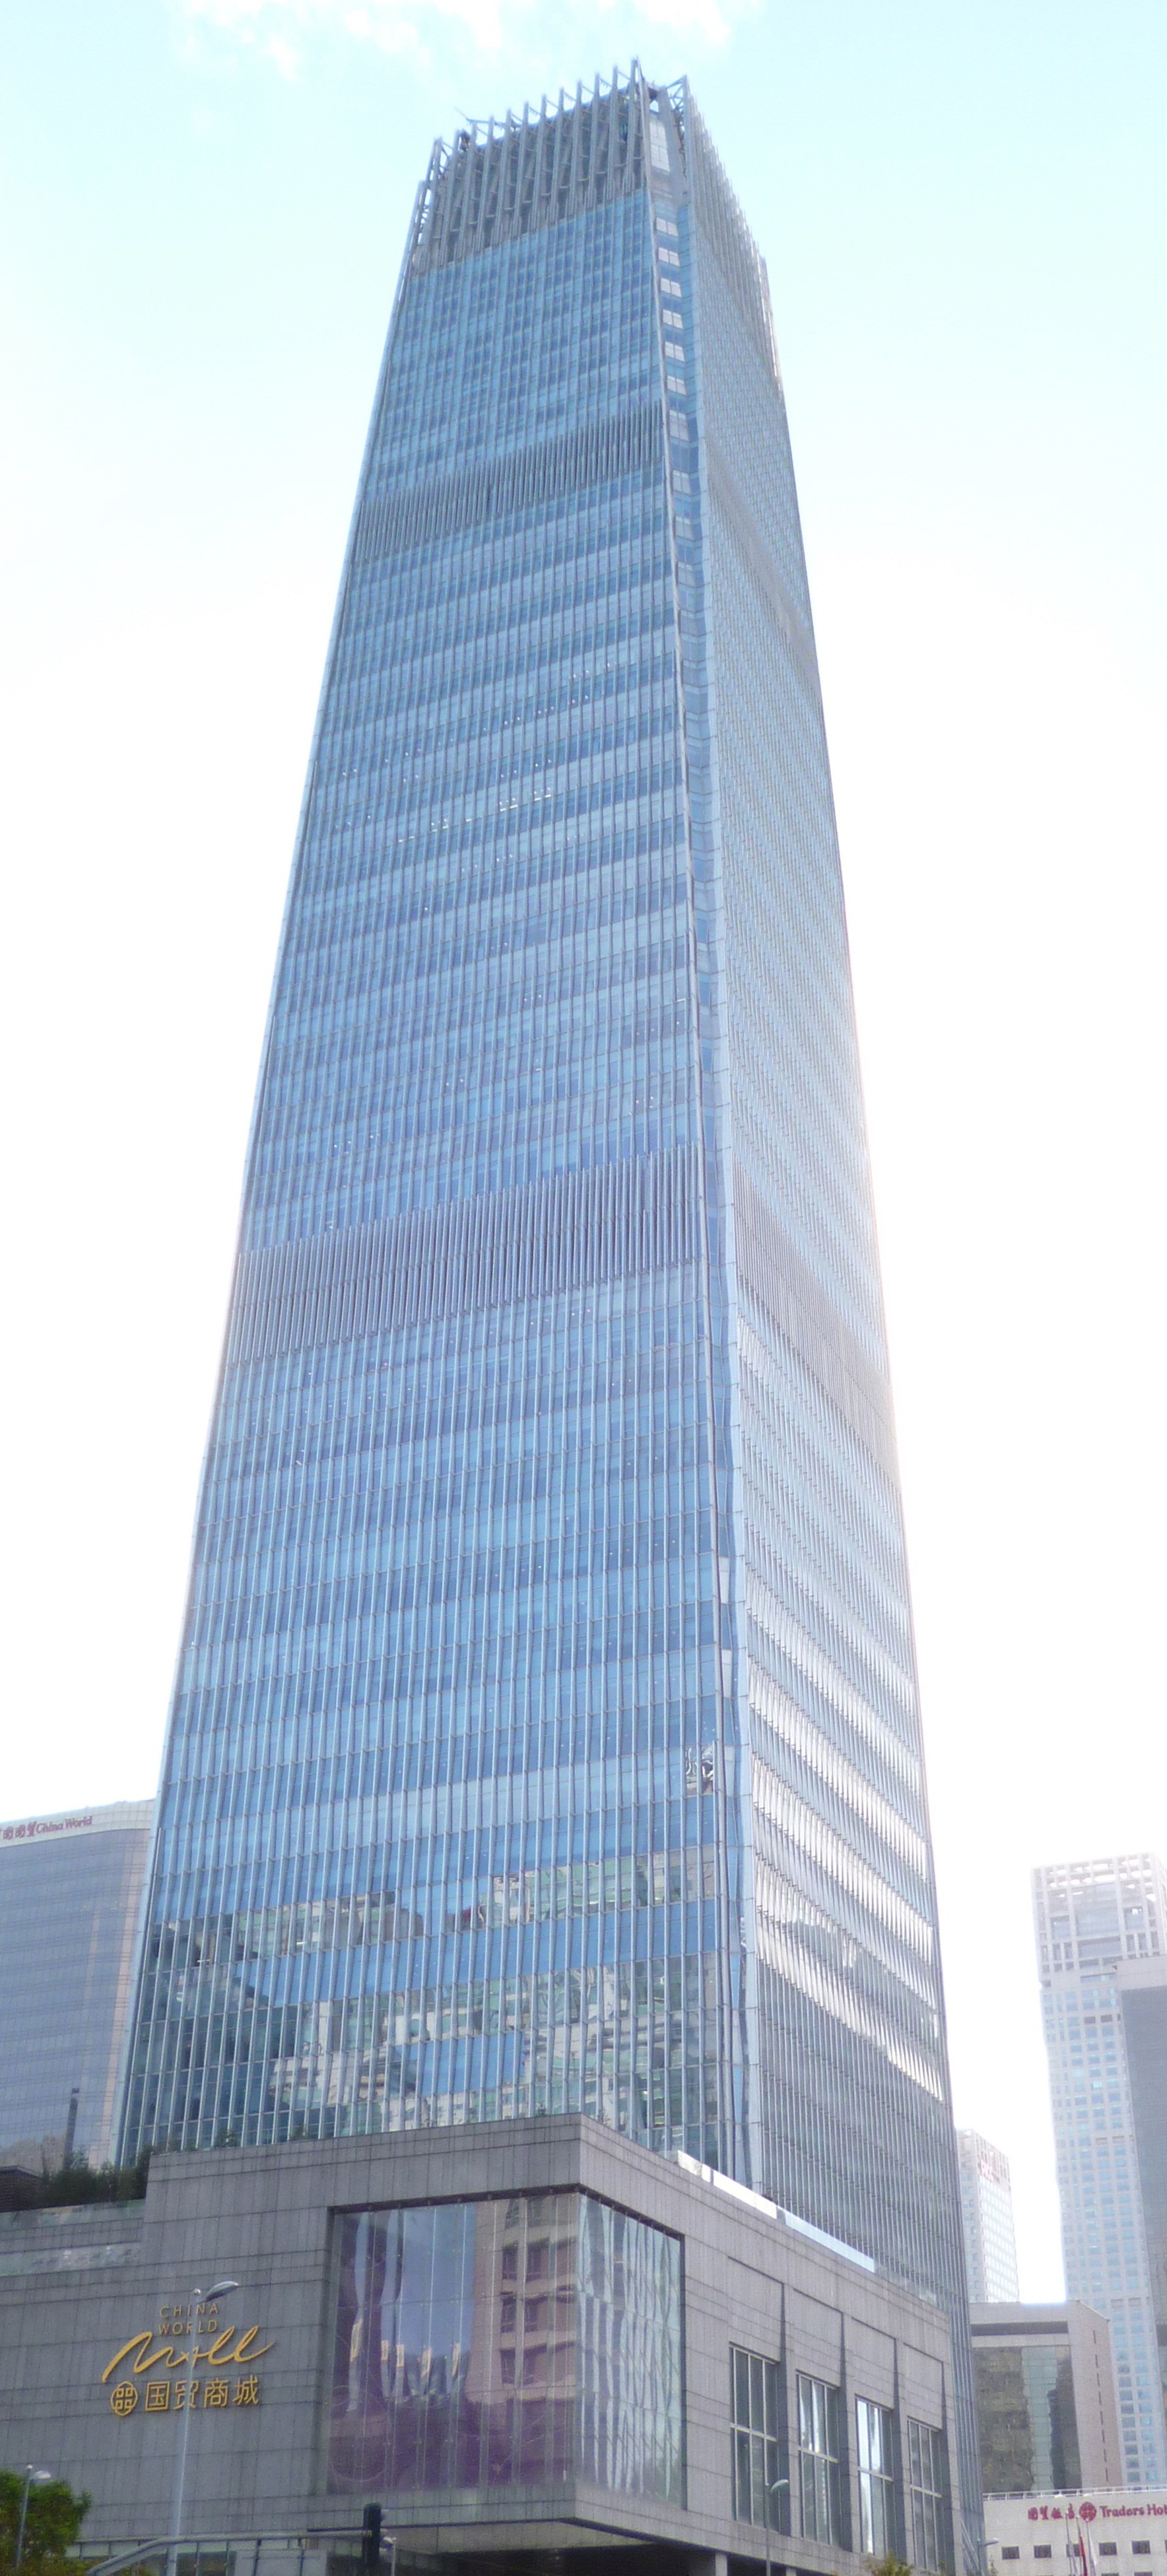 7.برج شماره ۳ تجارت جهانی چین (China World Trade Center Tower III)